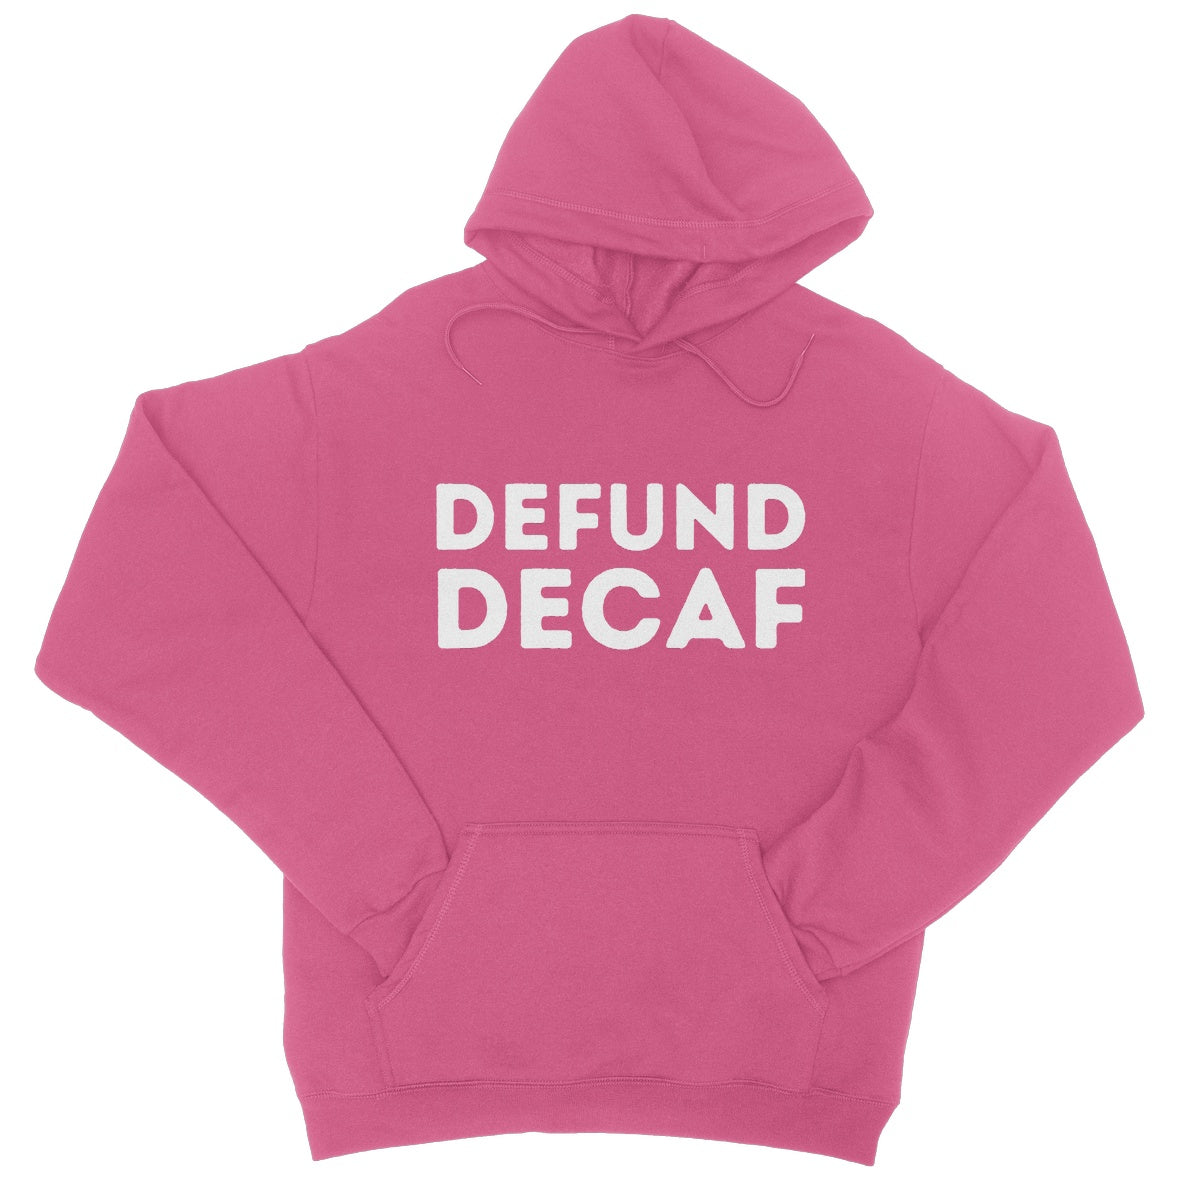 defund decaf hoodie pink